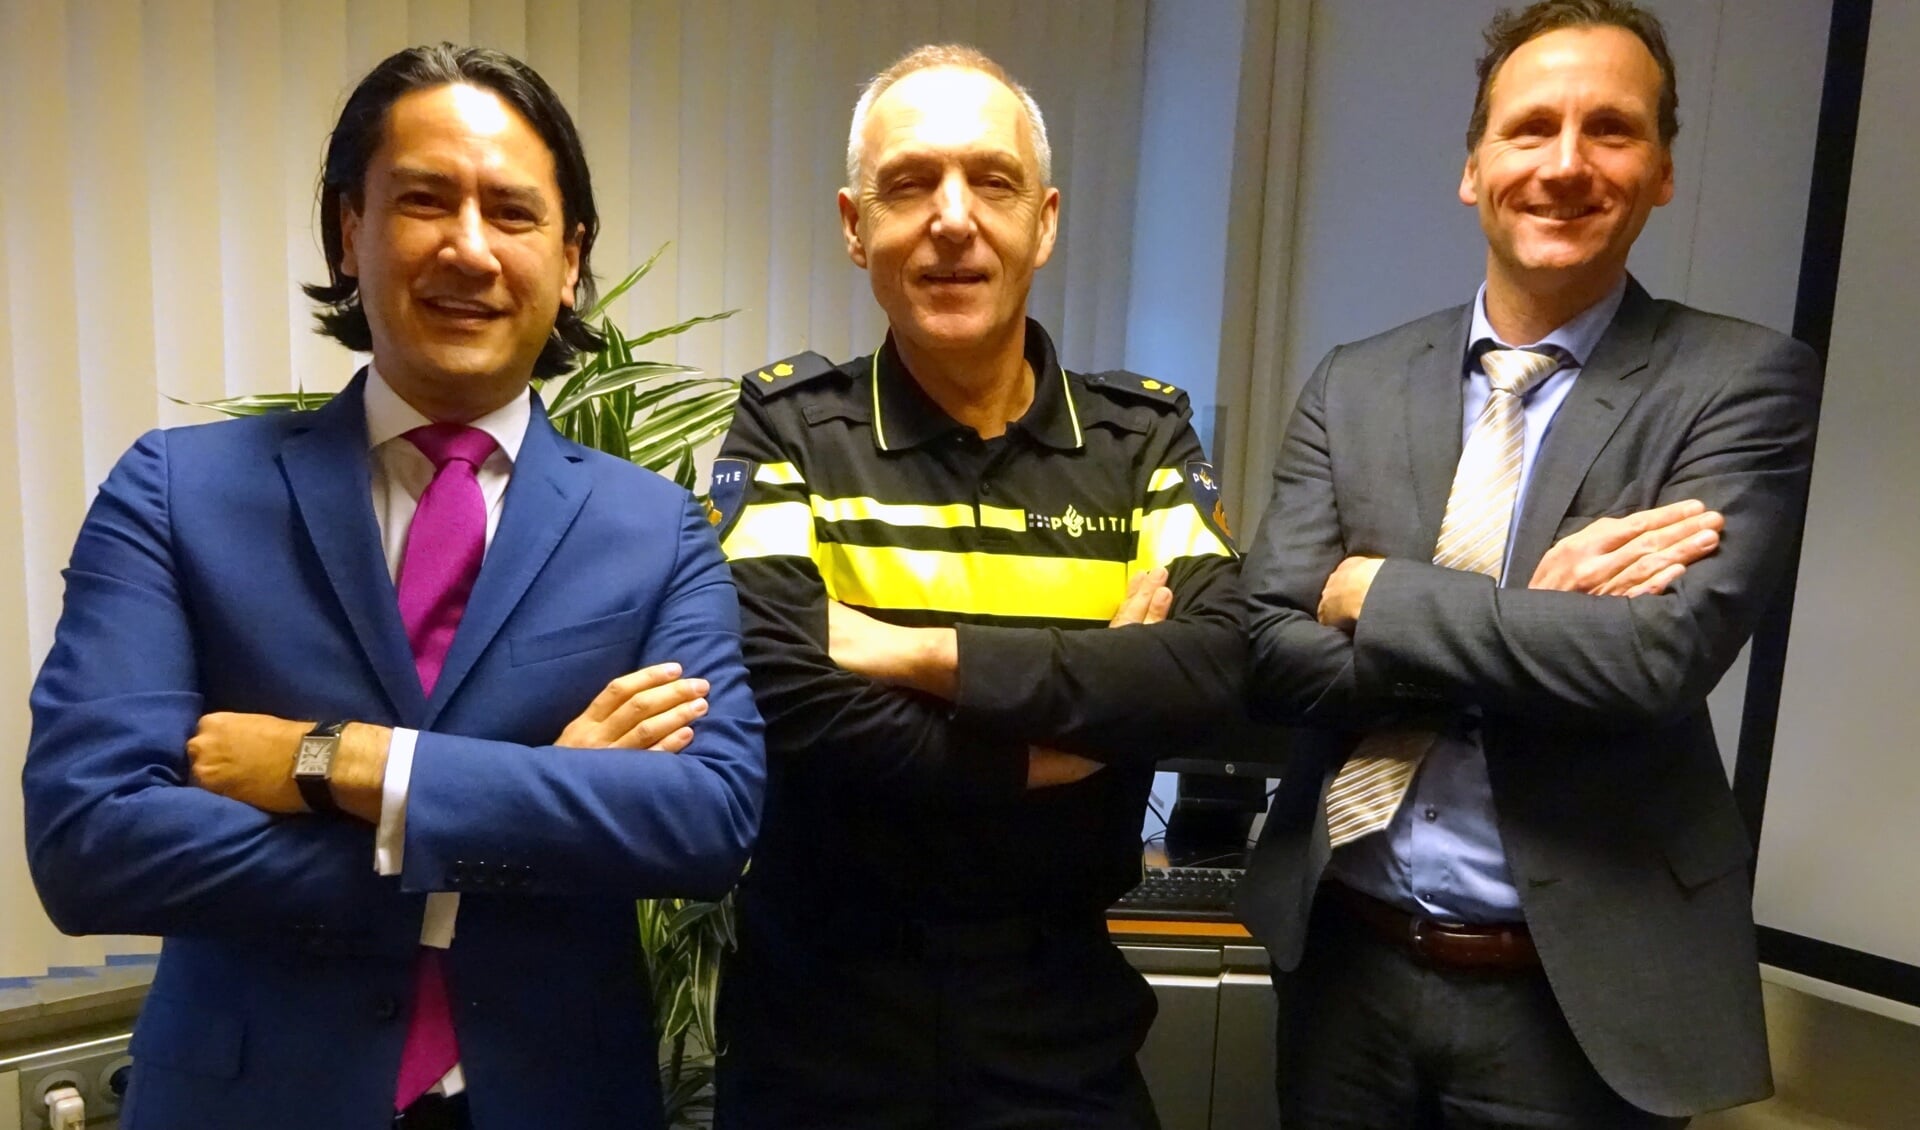 Burgemeester Harald Bergmann, politiechef Ronald Weydema en officier van justitie Marco van Leeuwen (vlnr): 'Een mes bij je dragen is niet normaal.'